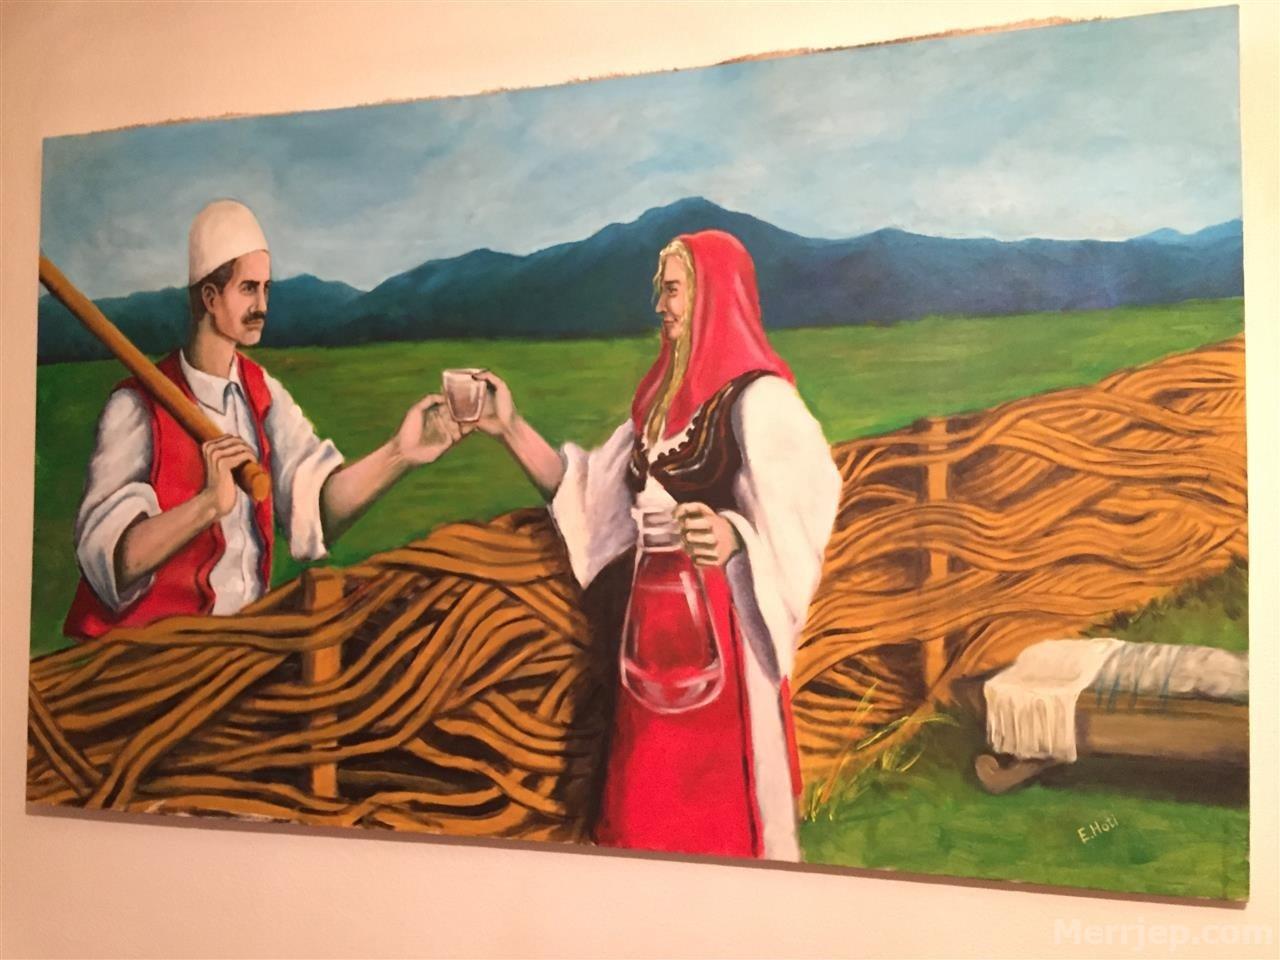 Pikture Tradita Shqiptare Besiane Ne jete nuk i eshte dashur te sforcohet shume per te arritur dicka, sepse ka besim te vetja, ka bere ate qe i ka pelqyer dhe gjithmone ja kam dale mbane. pikture tradita shqiptare